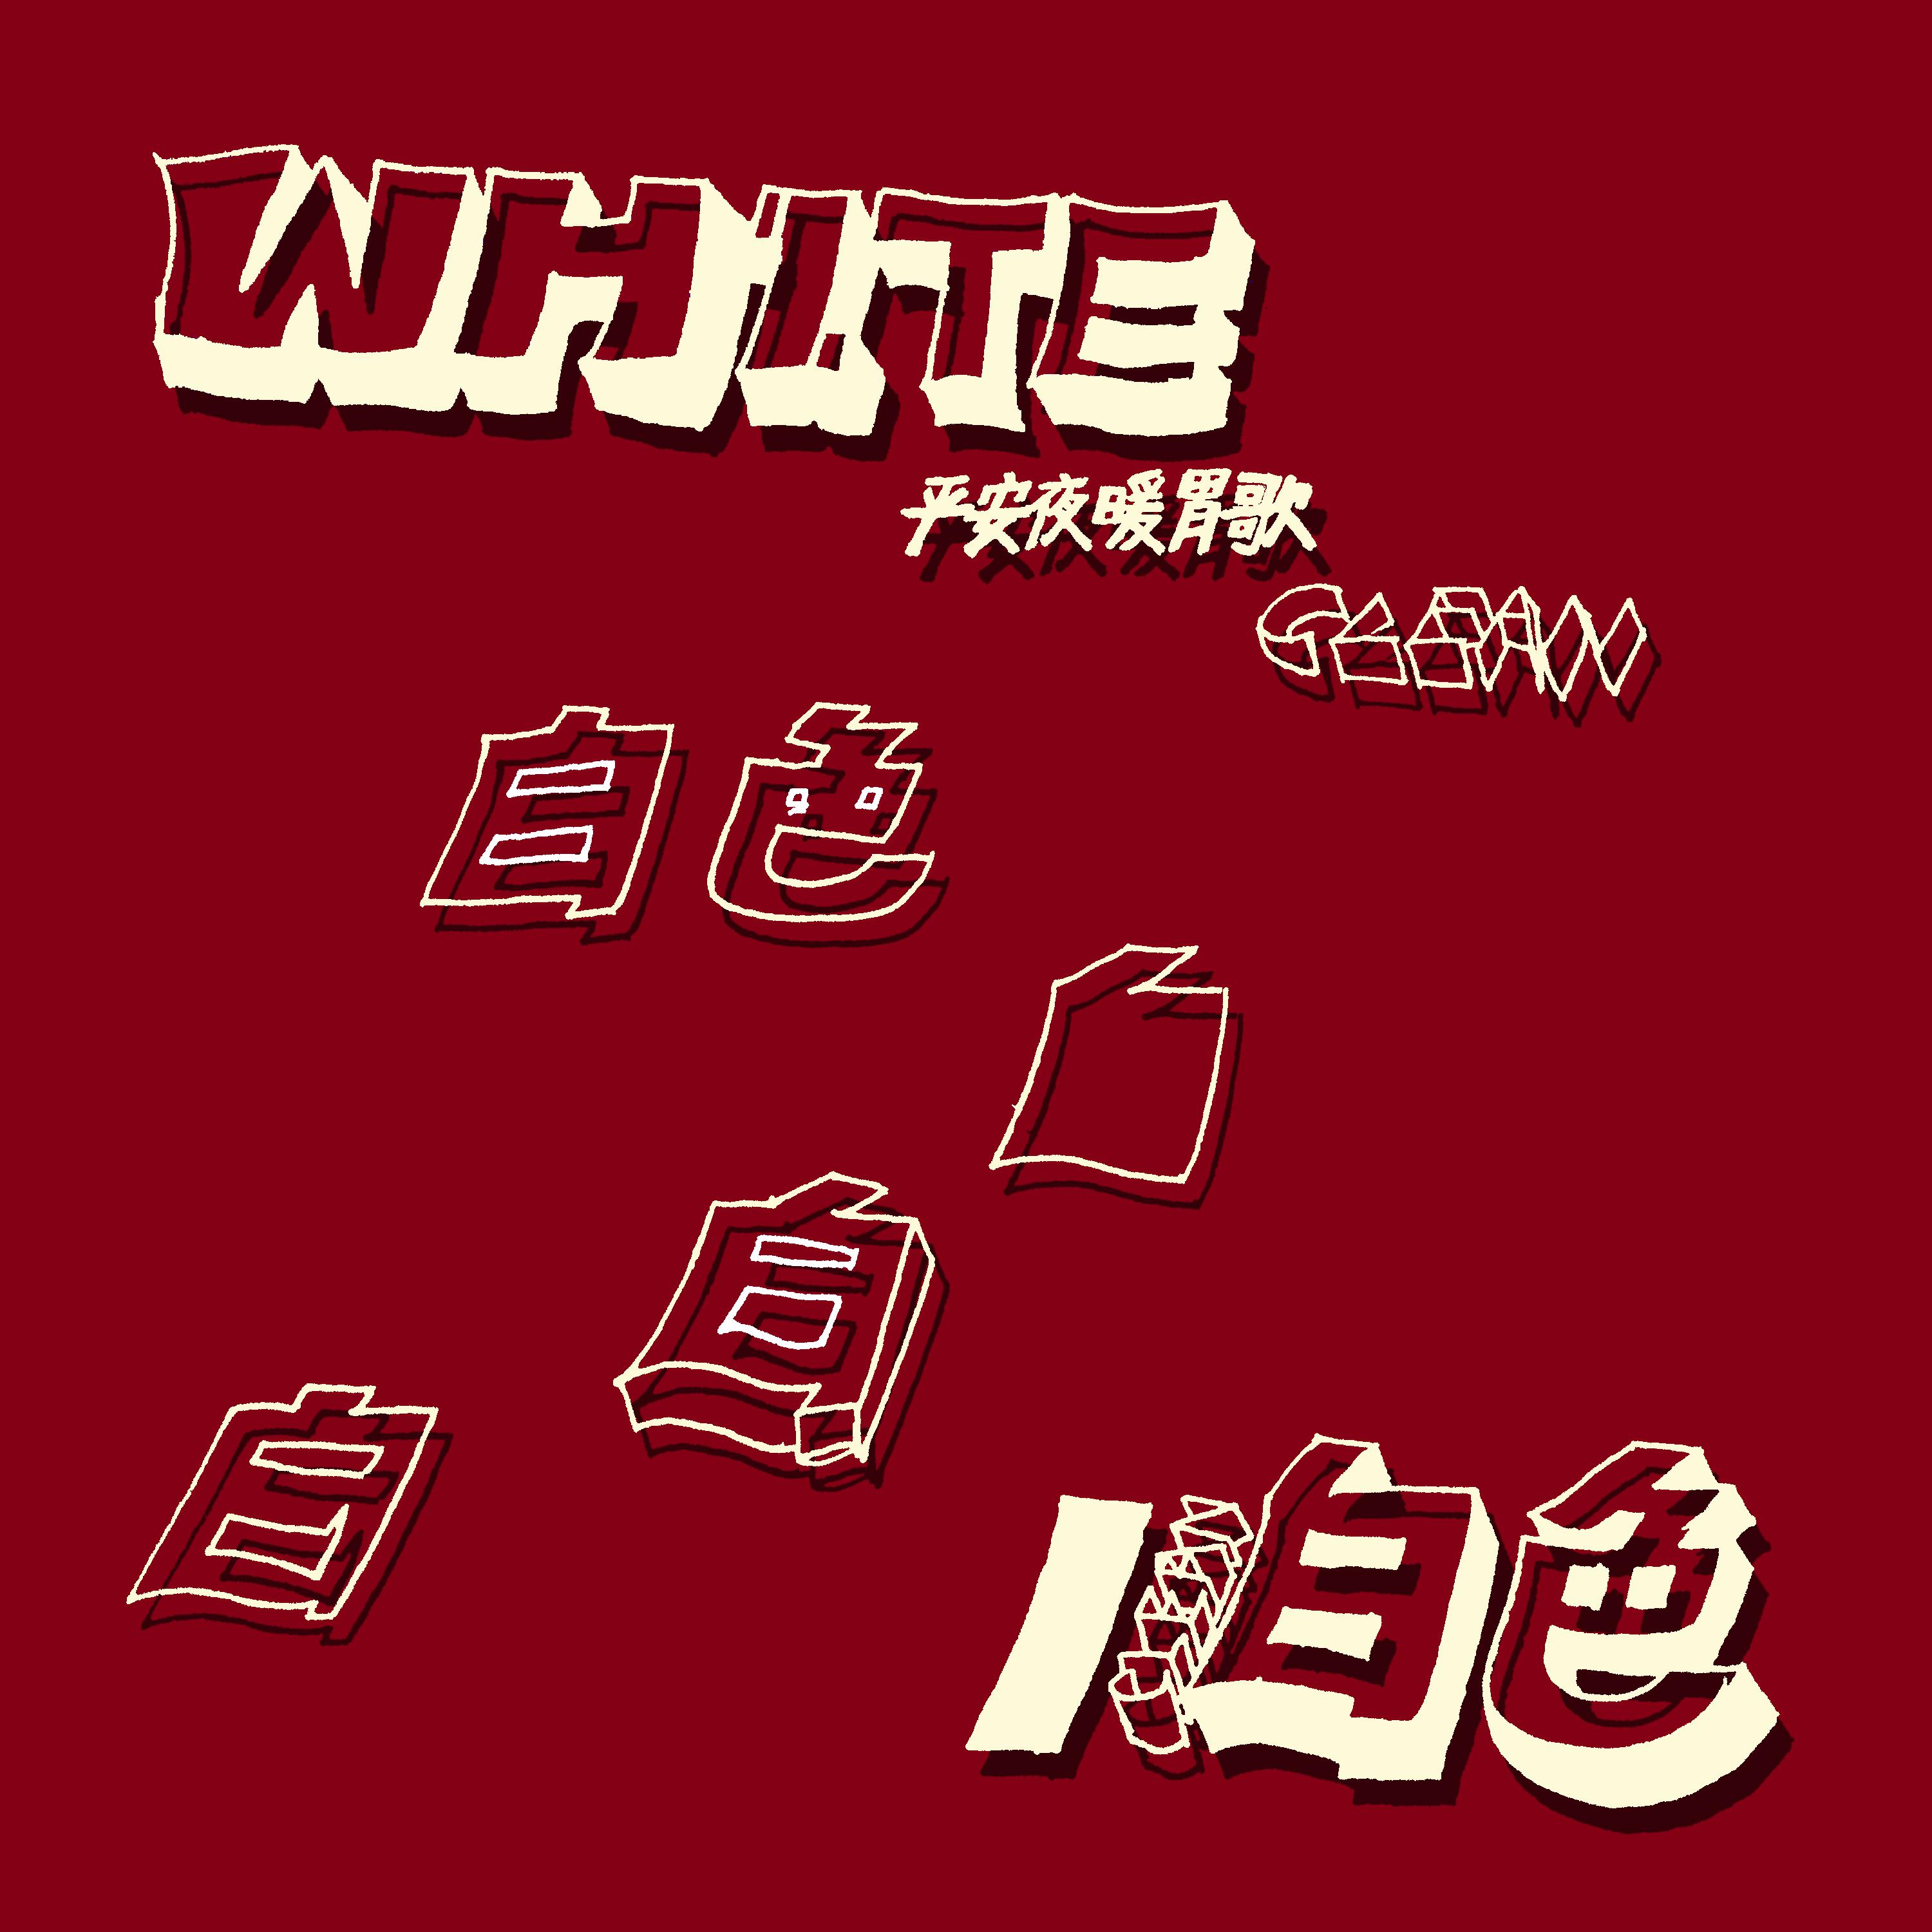 White lofi  remix